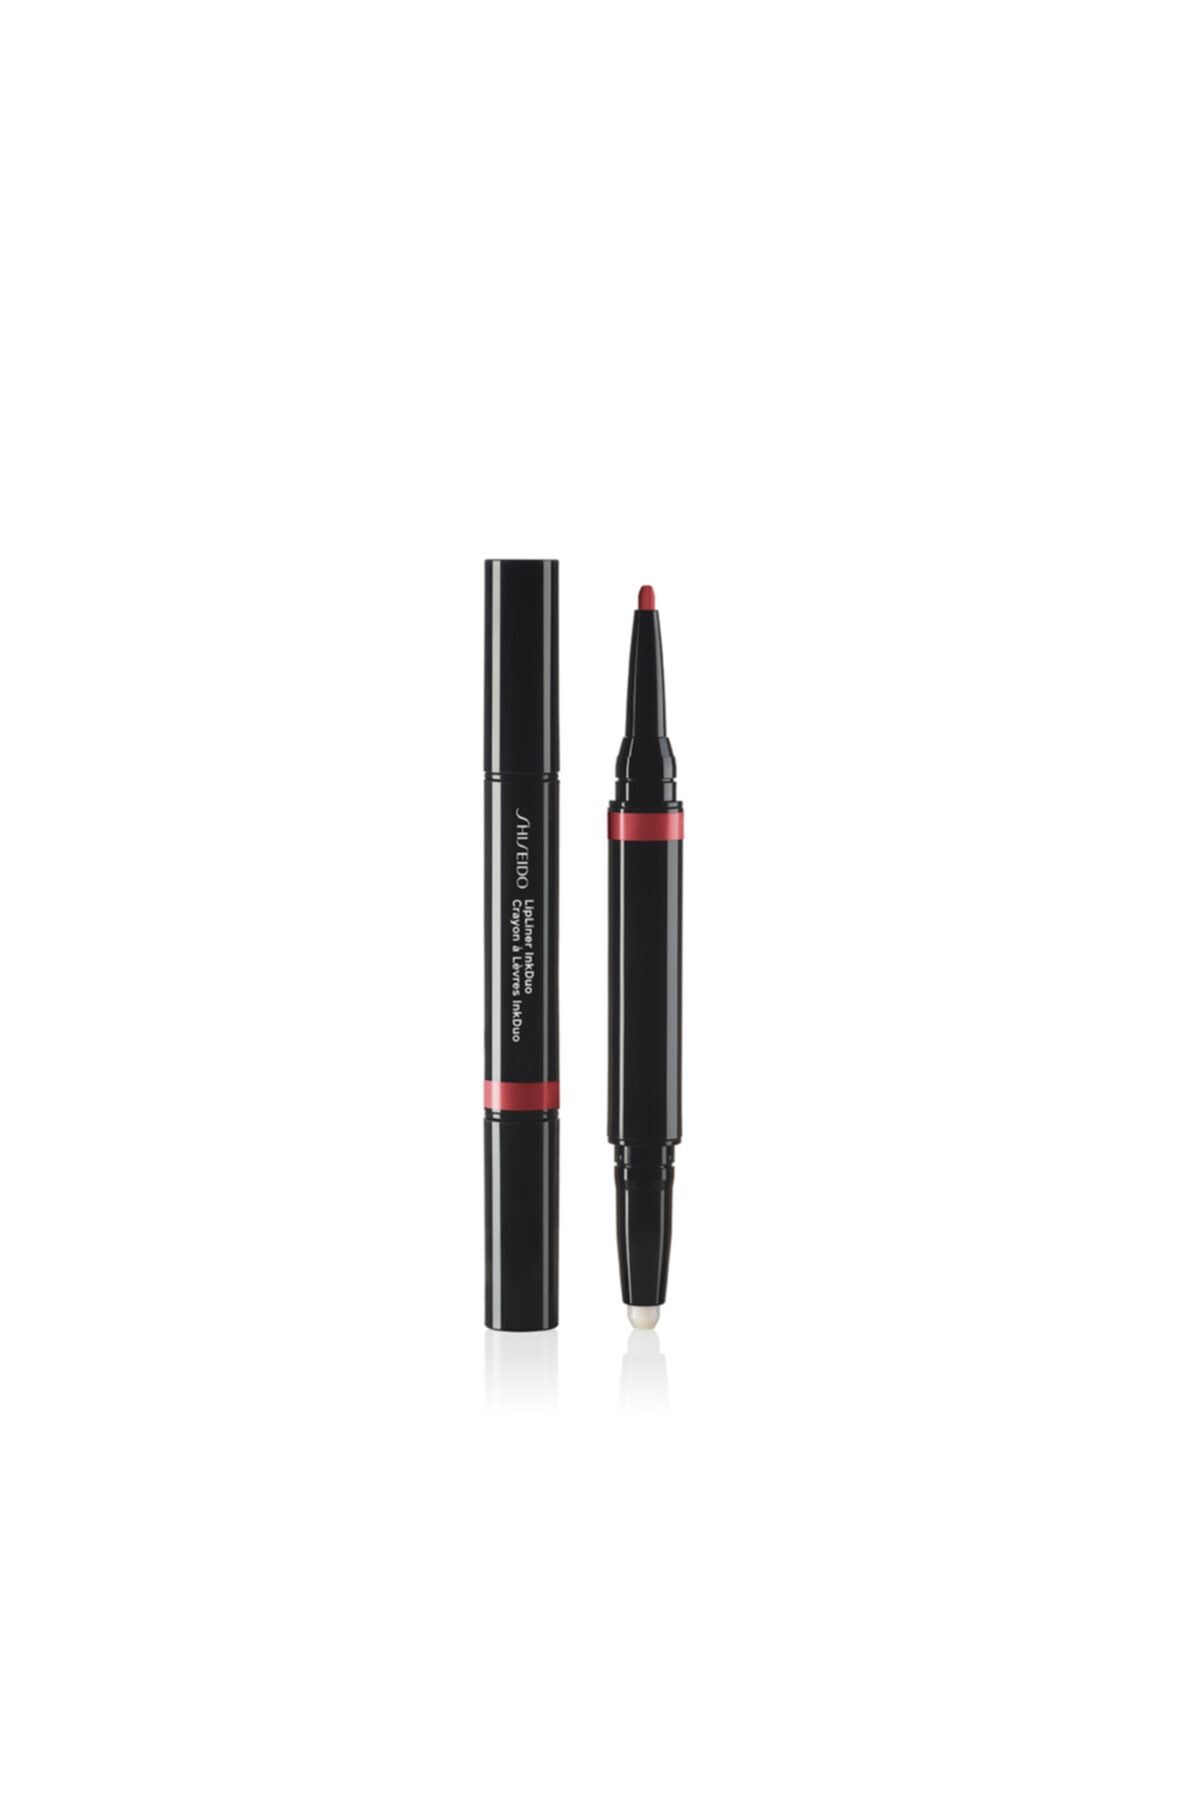 Shiseido Lipliner Inkduo 09 -2si1 Arada Dudak Bazı Ve Kontür Kalemi